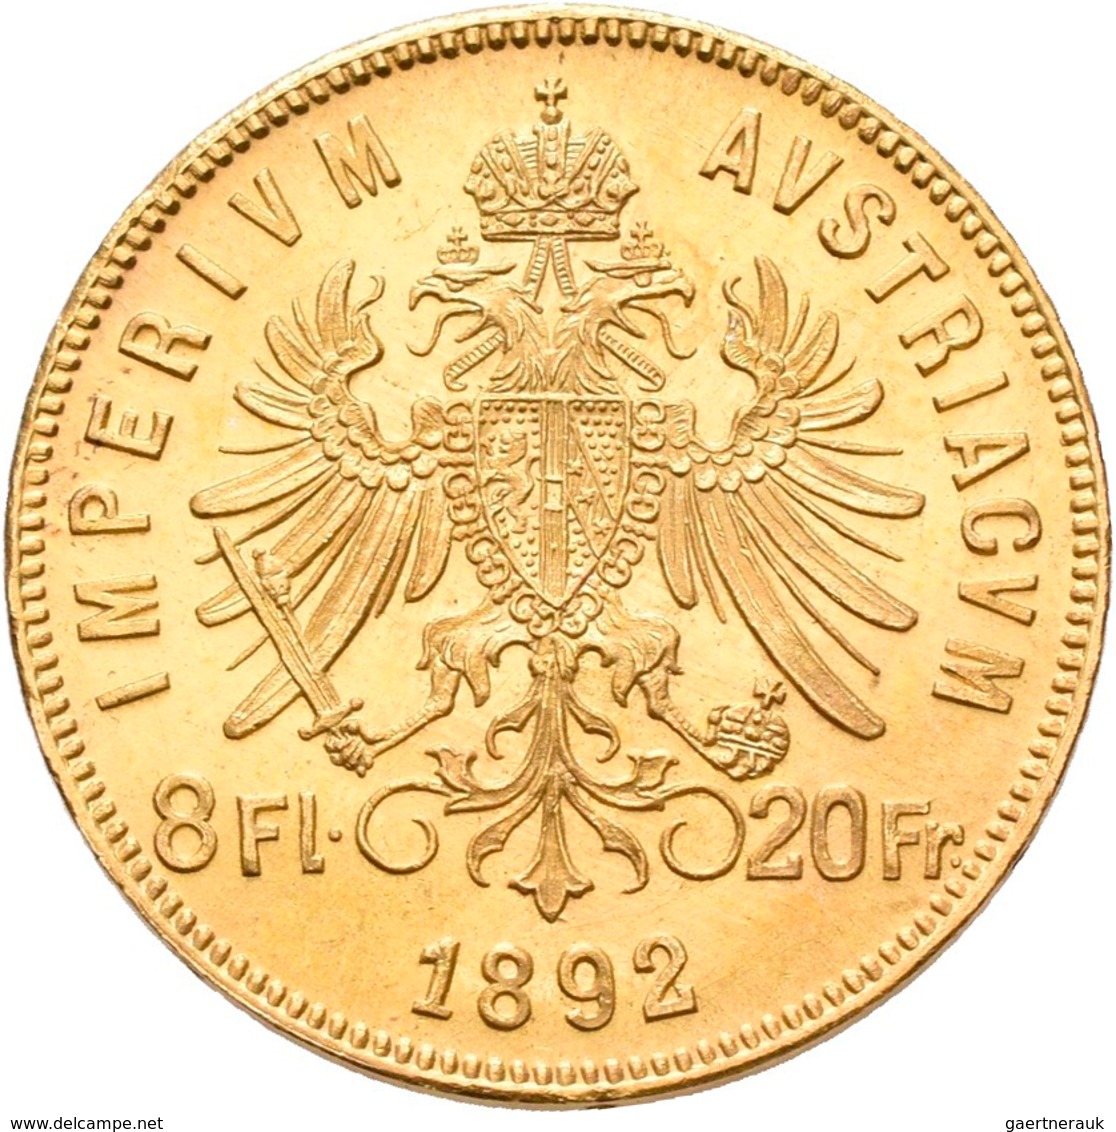 Österreich - Anlagegold: Lot 6 Goldmünzen: 3 x 10 Kronen 1897, 1908, 1911; 2 x 20 Kronen 1903, 1915;